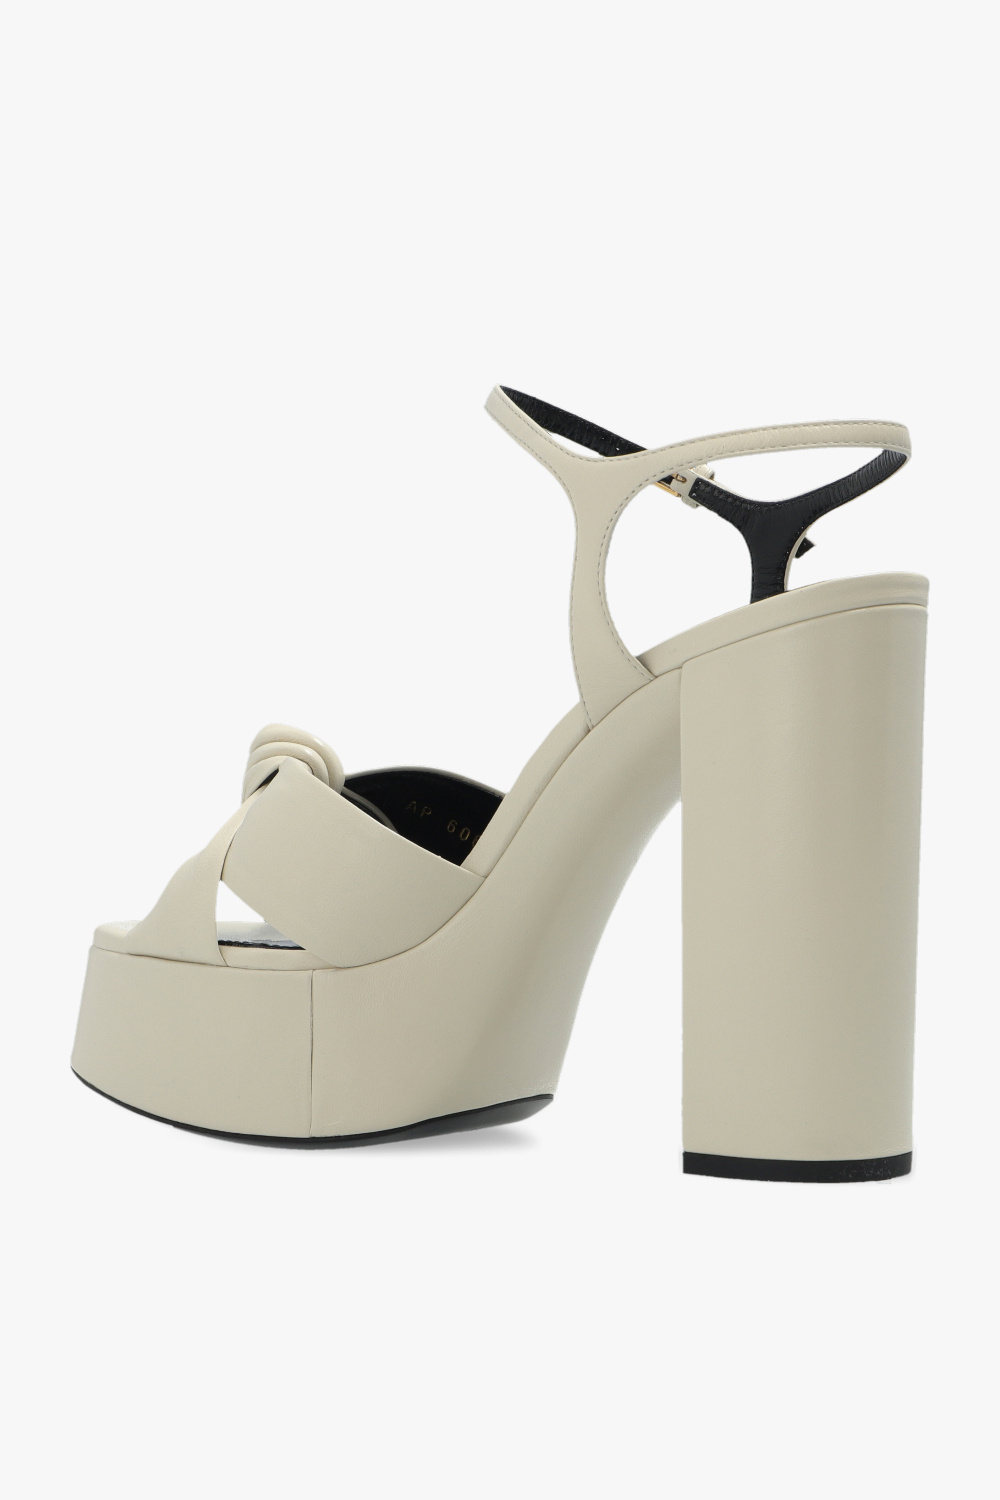 Saint Laurent ‘Bianca’ platform sandals